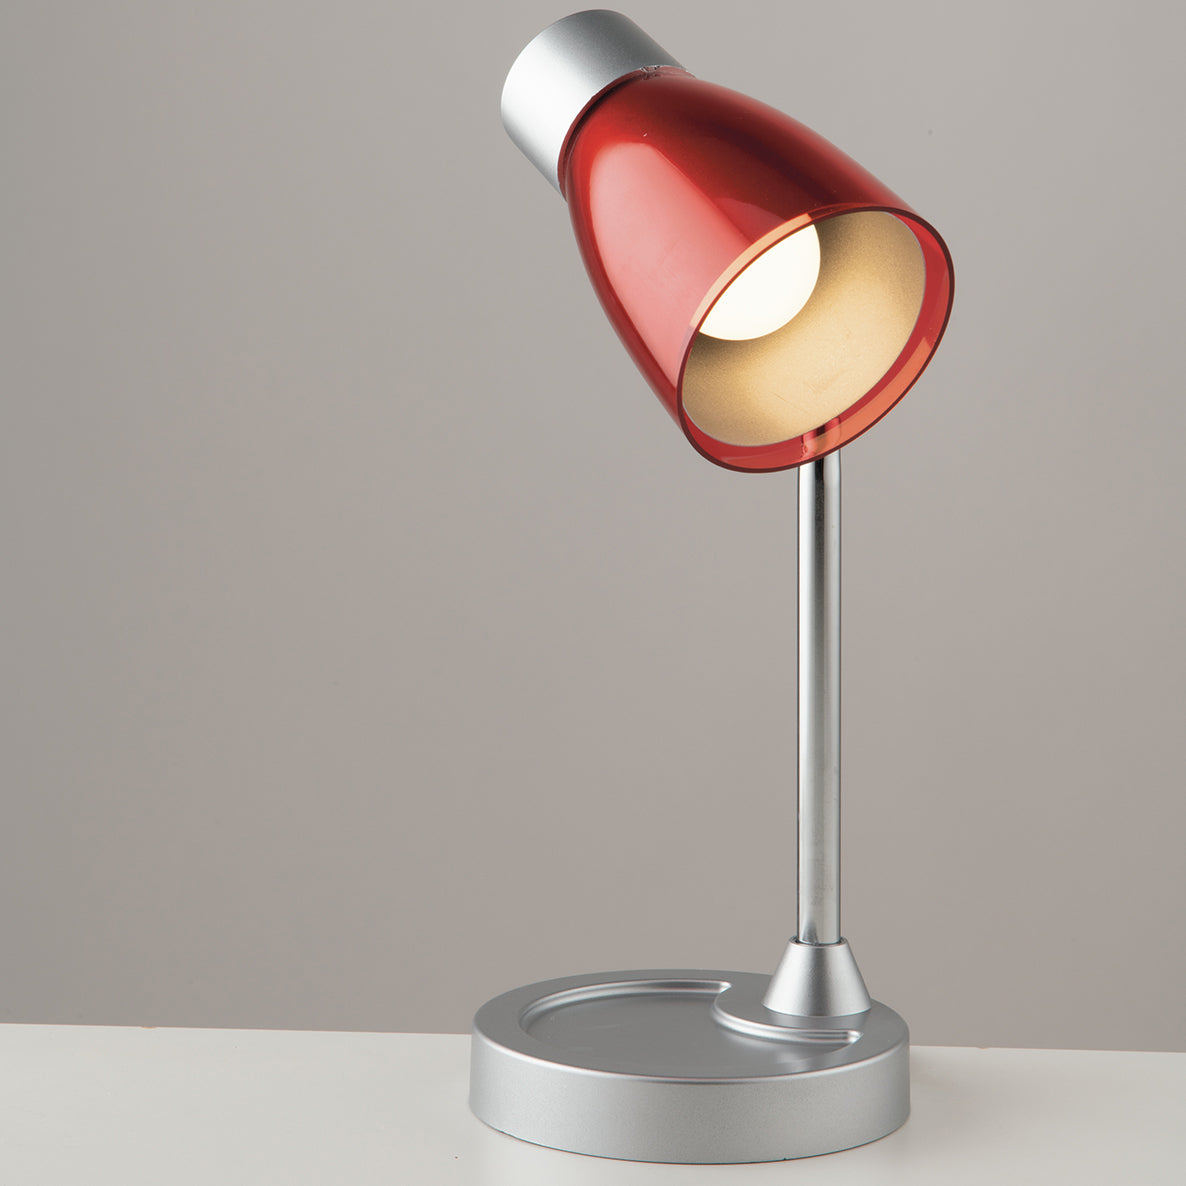 Lampada da tavolo ARKIMEDE rossa in metallo e plastica con diffusore orientabile